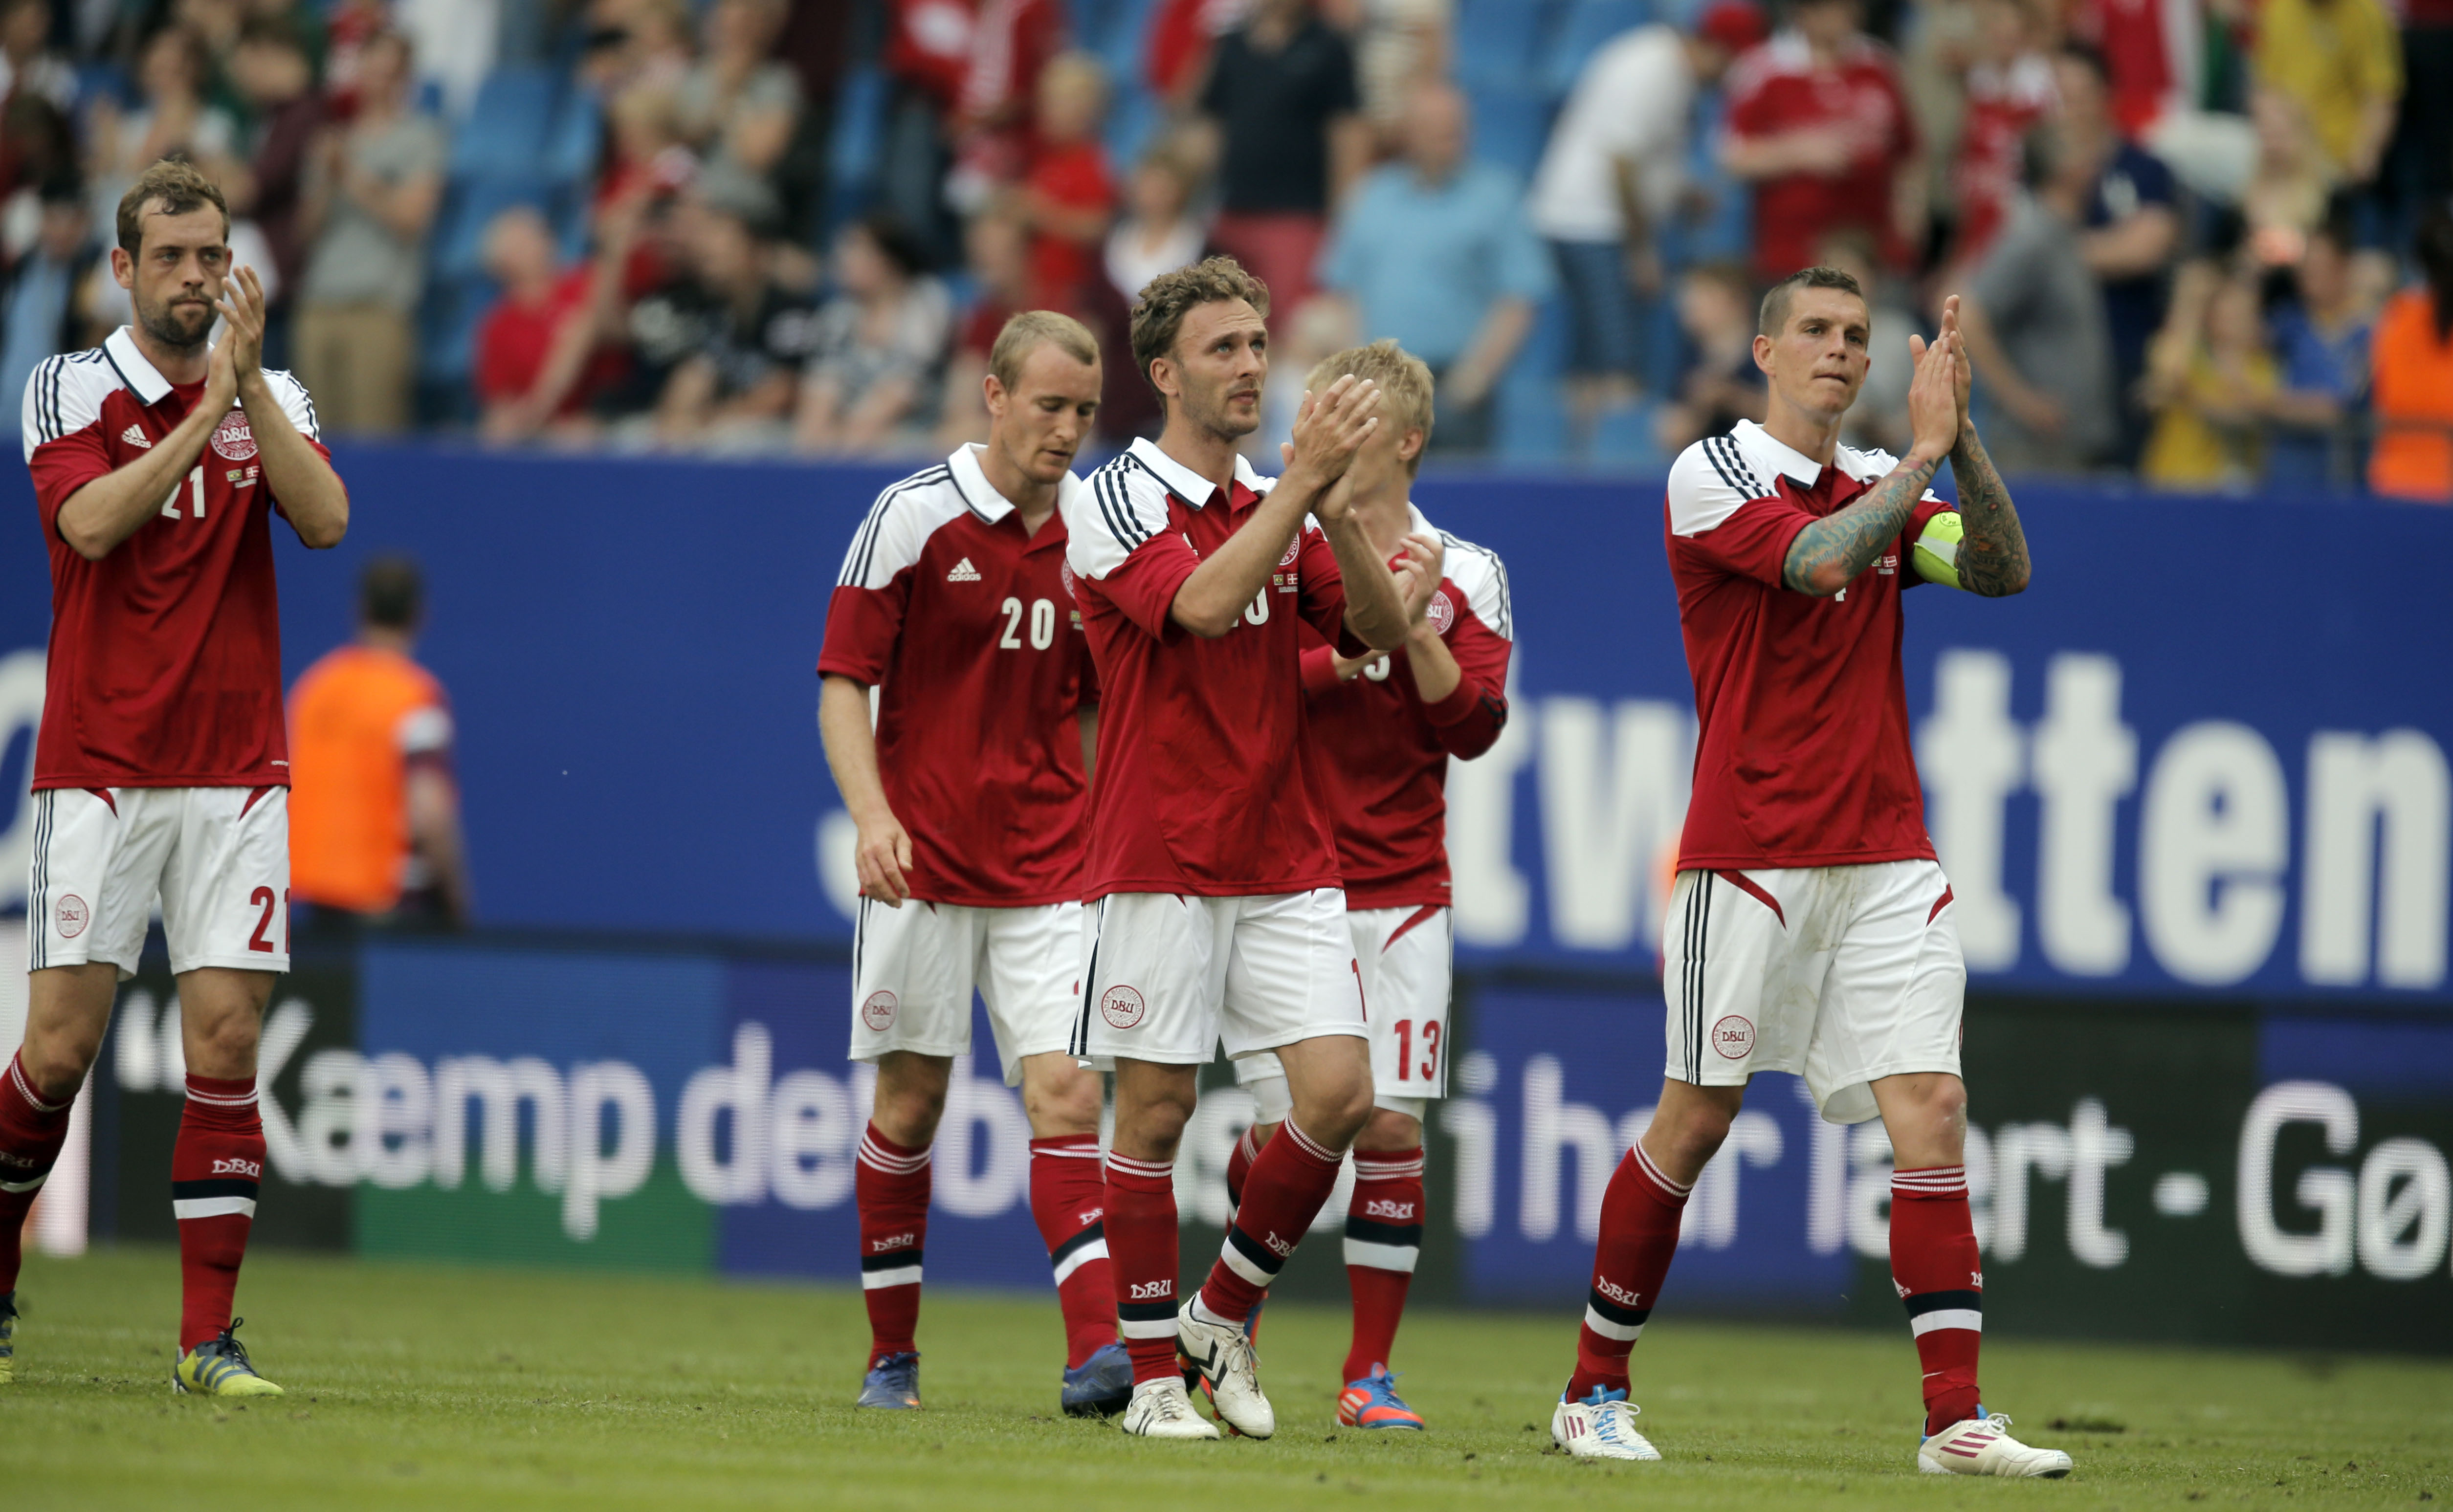 Fotboll, Danmark, Daniel Agger, EM, Nicklas Bendtner, Fotbolls-EM